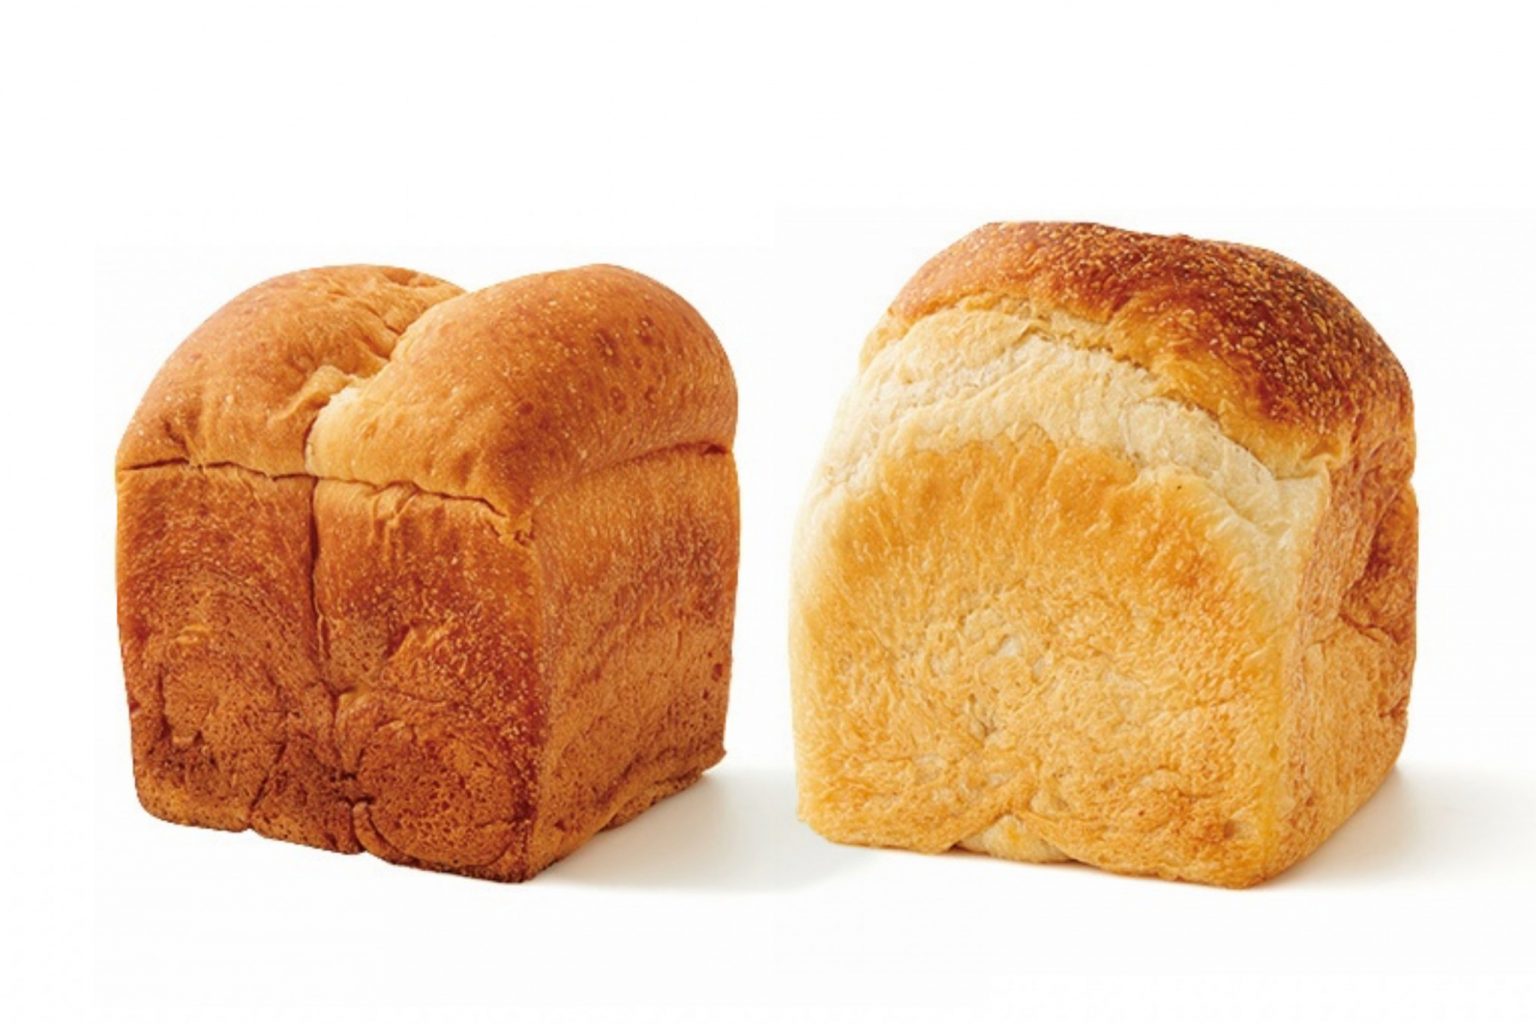 〈かまパン&ストア〉の食パン